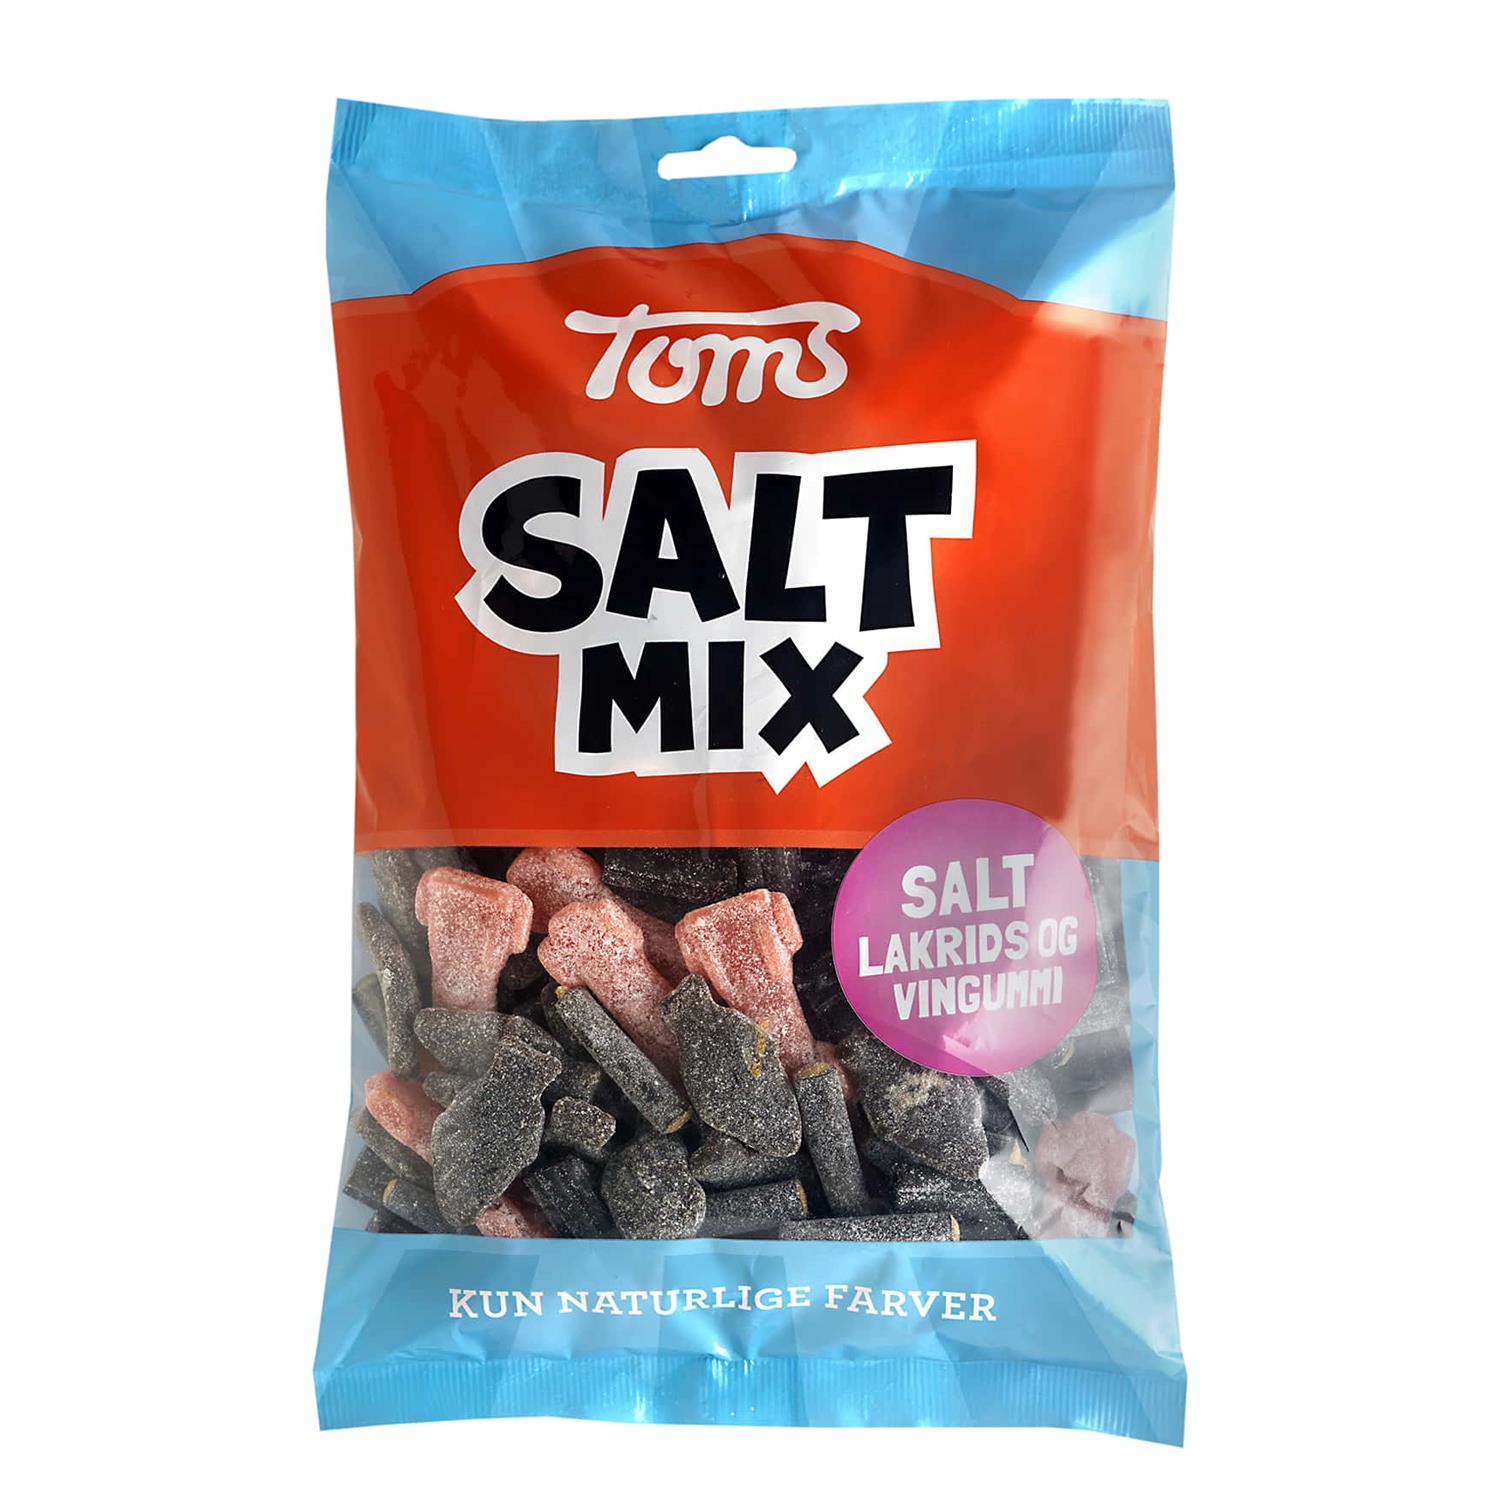 Skære af deform Långiver Toms Pingvin Salt Mix 900 g. - Grænsehandel til billige priser